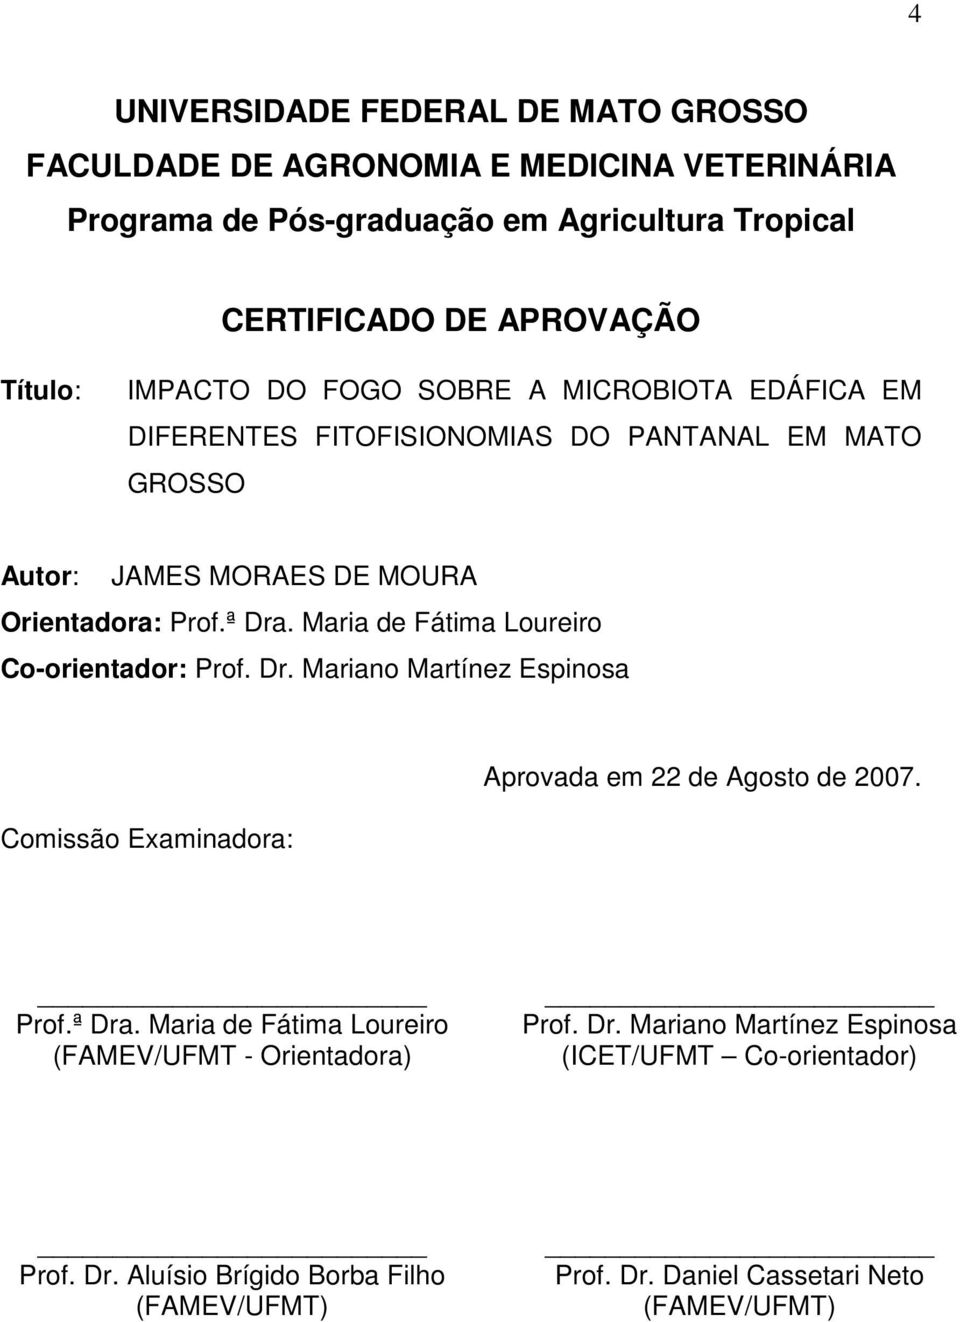 Mri de Fátim Loureiro Co-orientdor: Prof. Dr. Mrino Mrtínez Espinos Comissão Exmindor: Aprovd em 22 de Agosto de 2007. Prof.ª Dr.